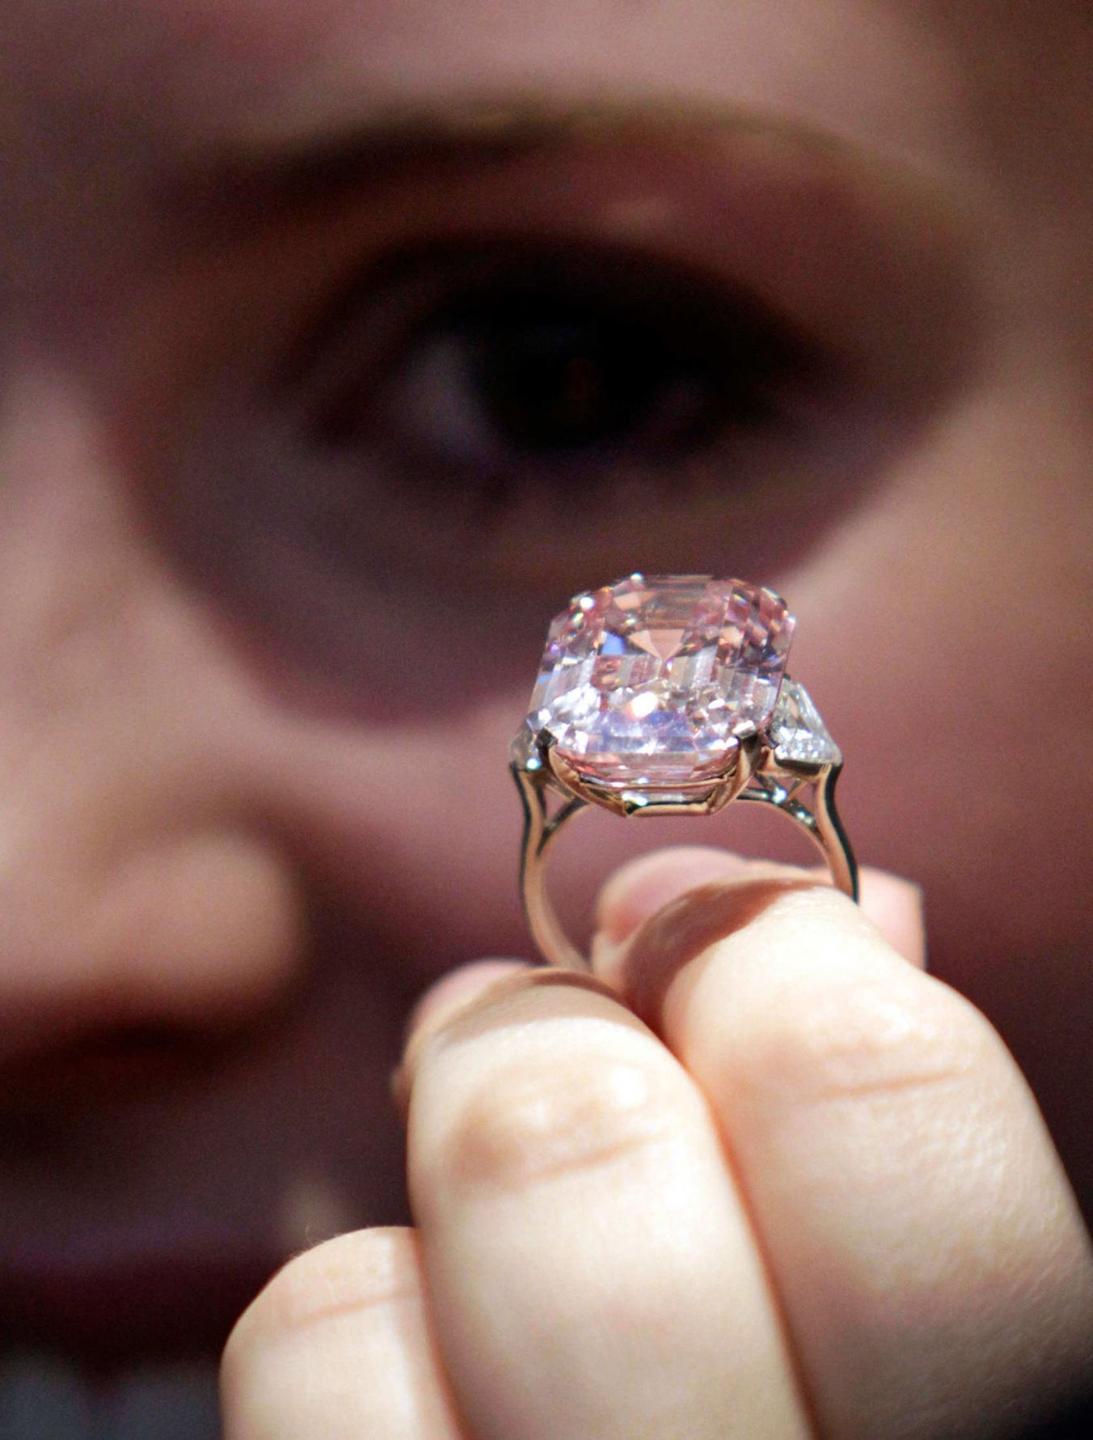 De Graff Pink ring, het duurste diamanten sieraad. Ook BAUNAT verhandelt gekleurde diamanten.